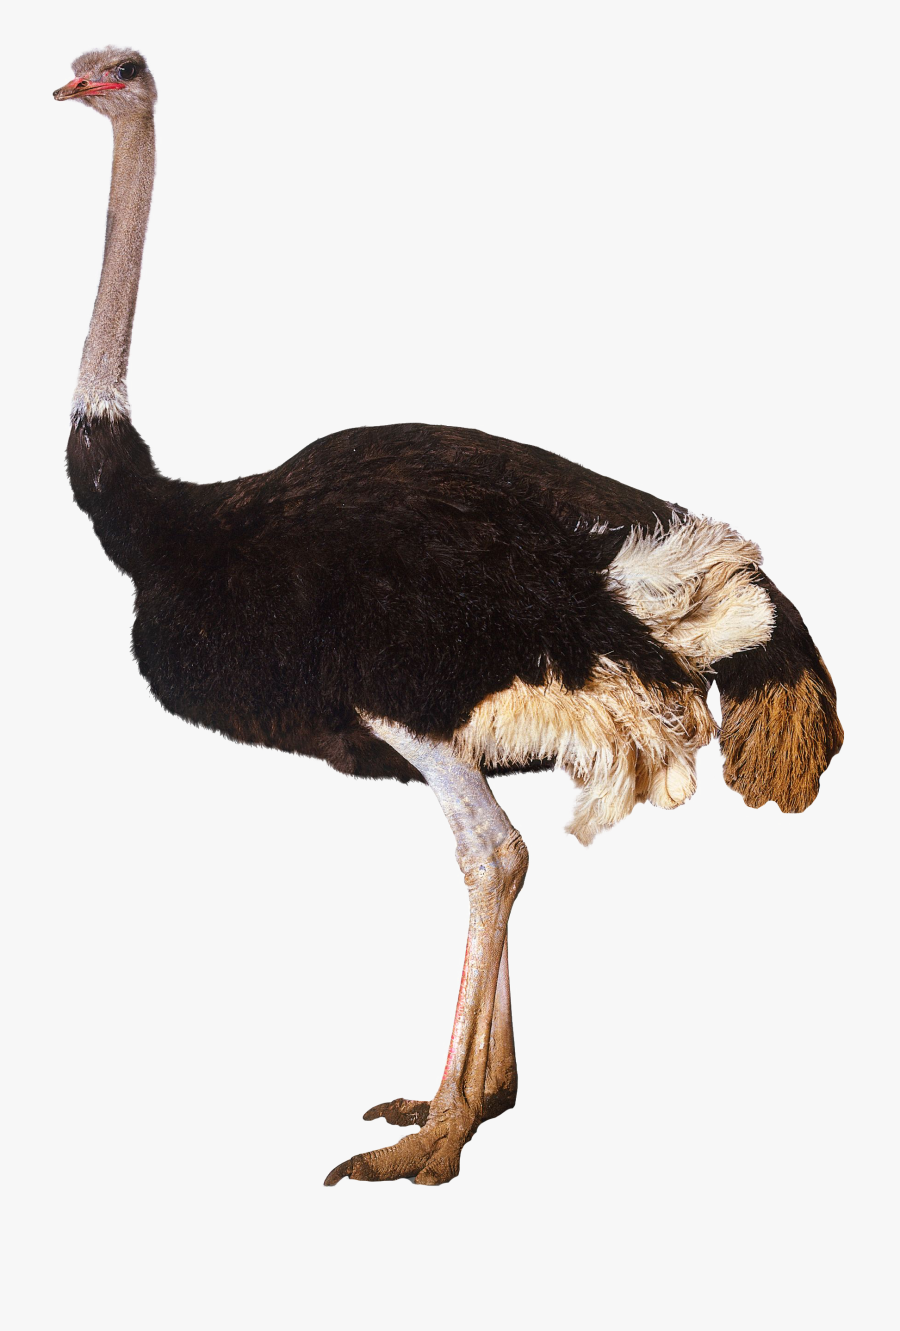 Ostrich Standing - Ostrich Png, Transparent Clipart